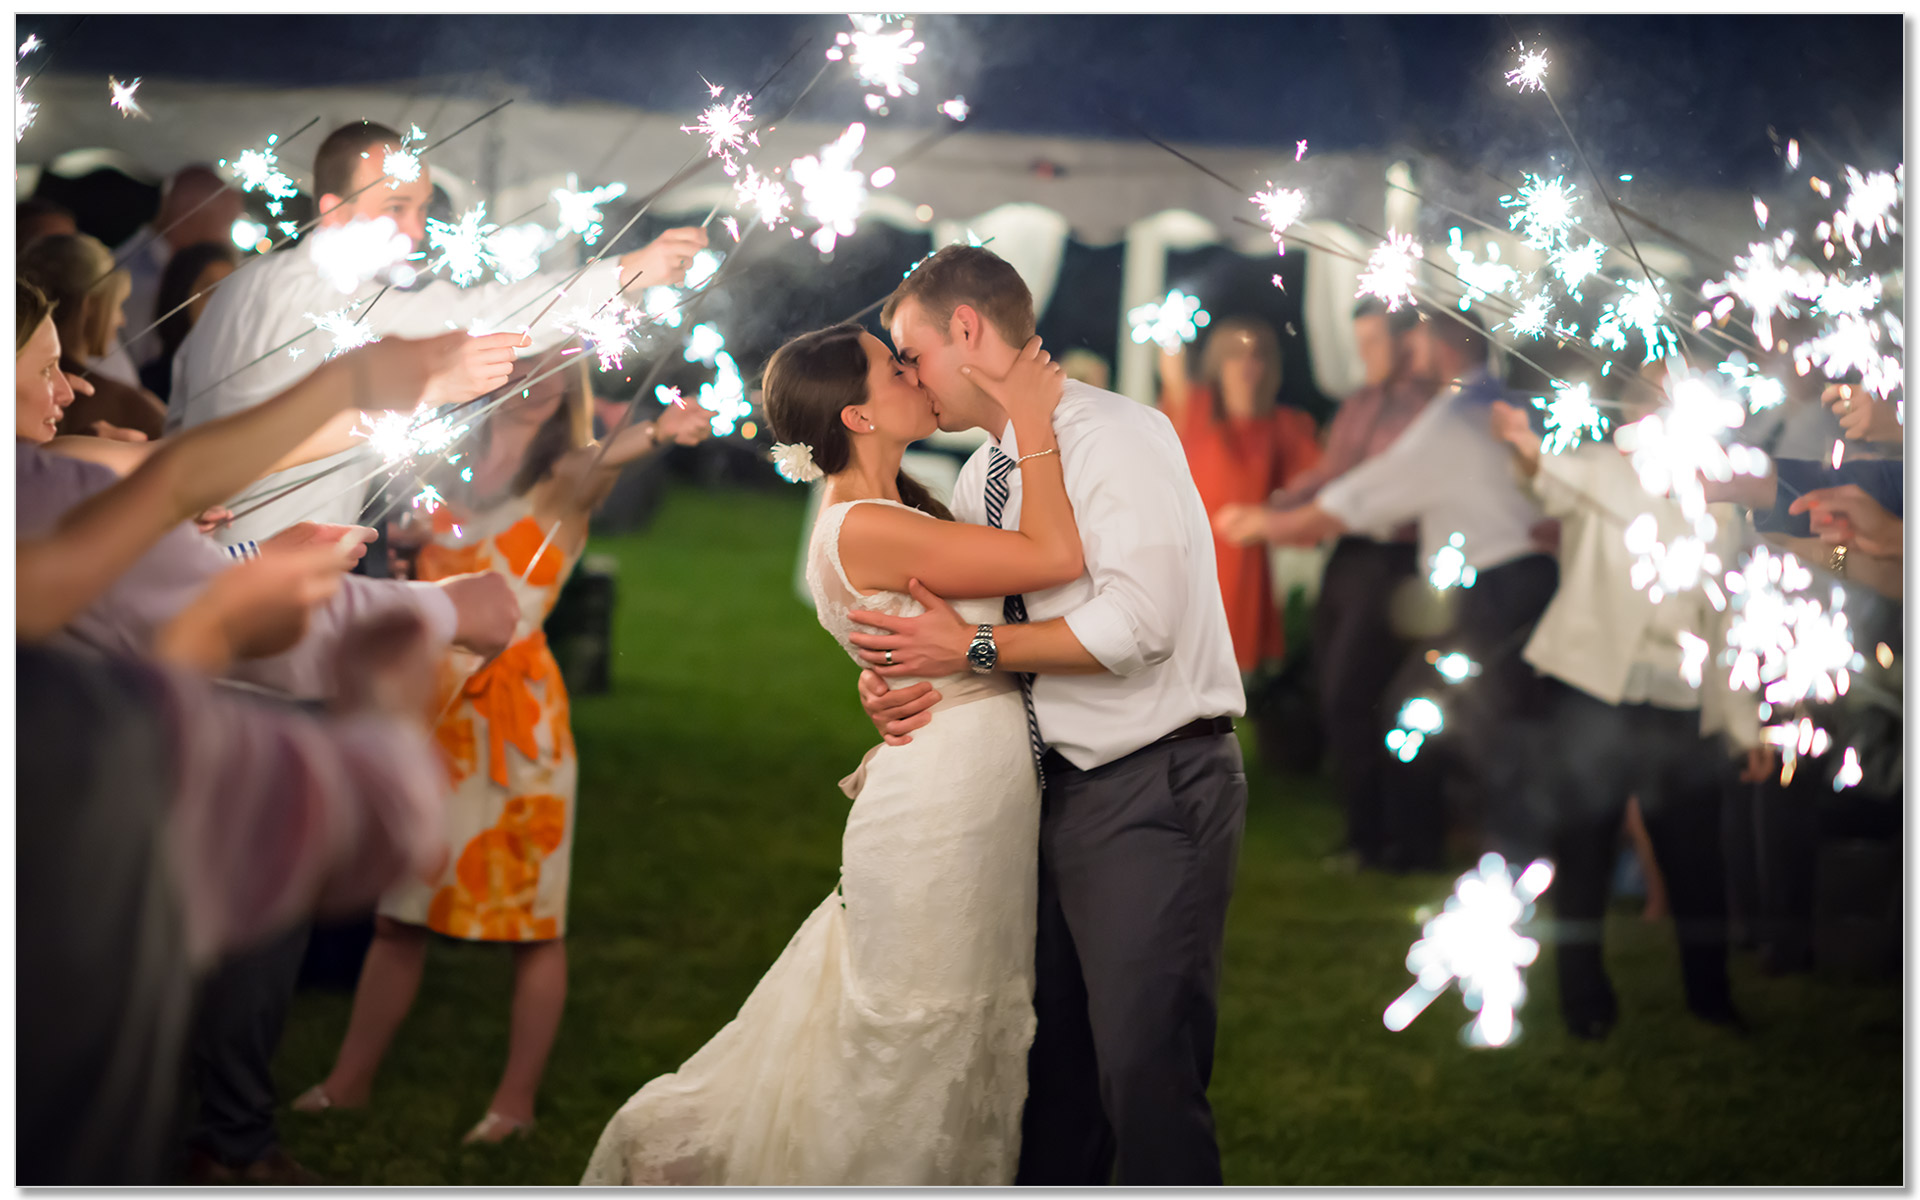 Potato Farm Kentucky sparklers wedding